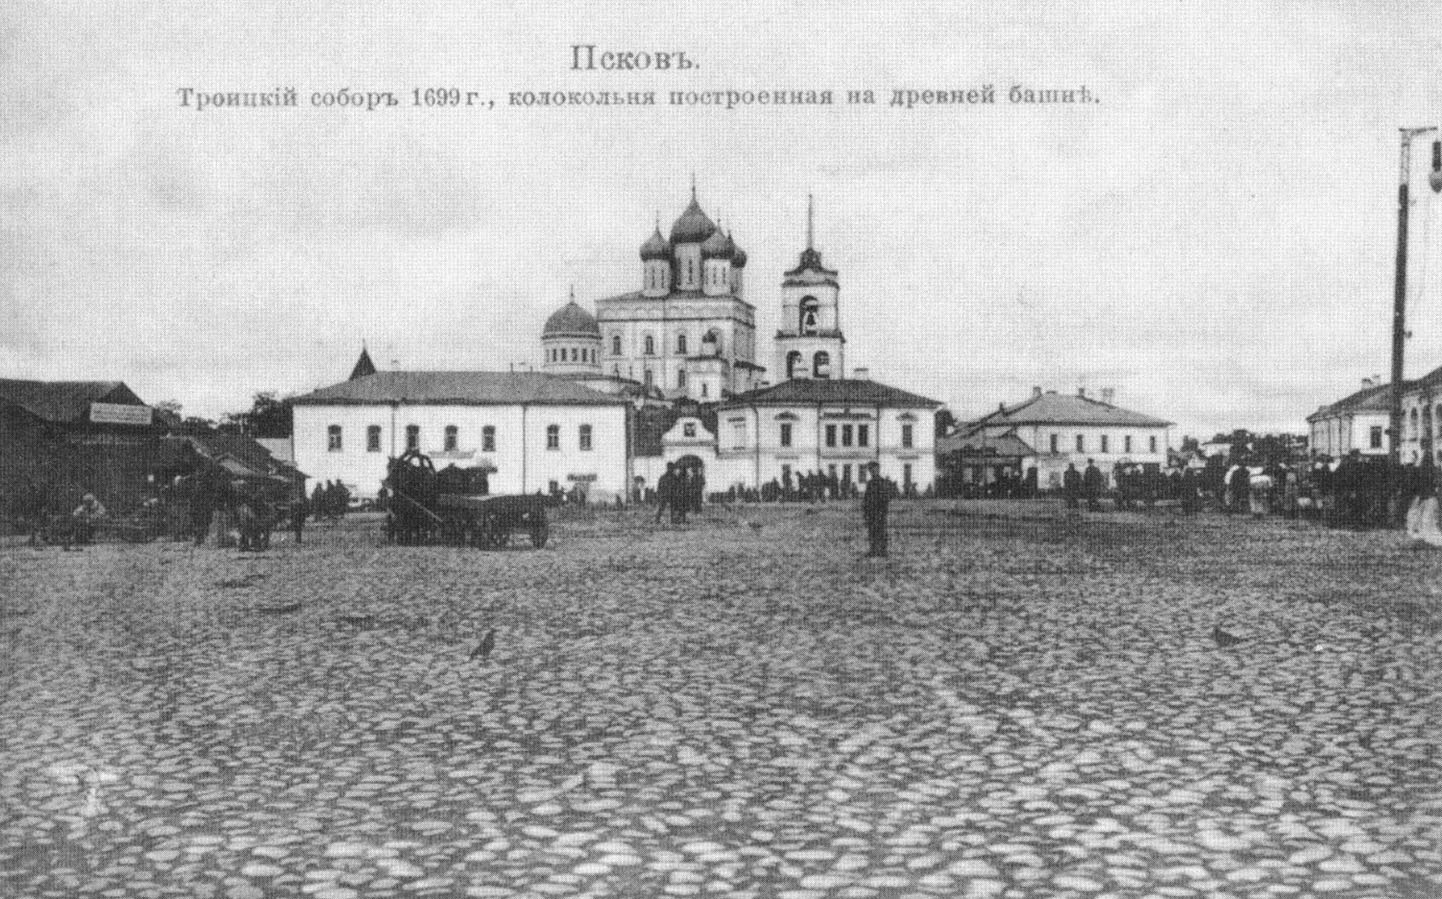 Псков. Троицкий собор 1699 г., колокольня построенная на древней башне.